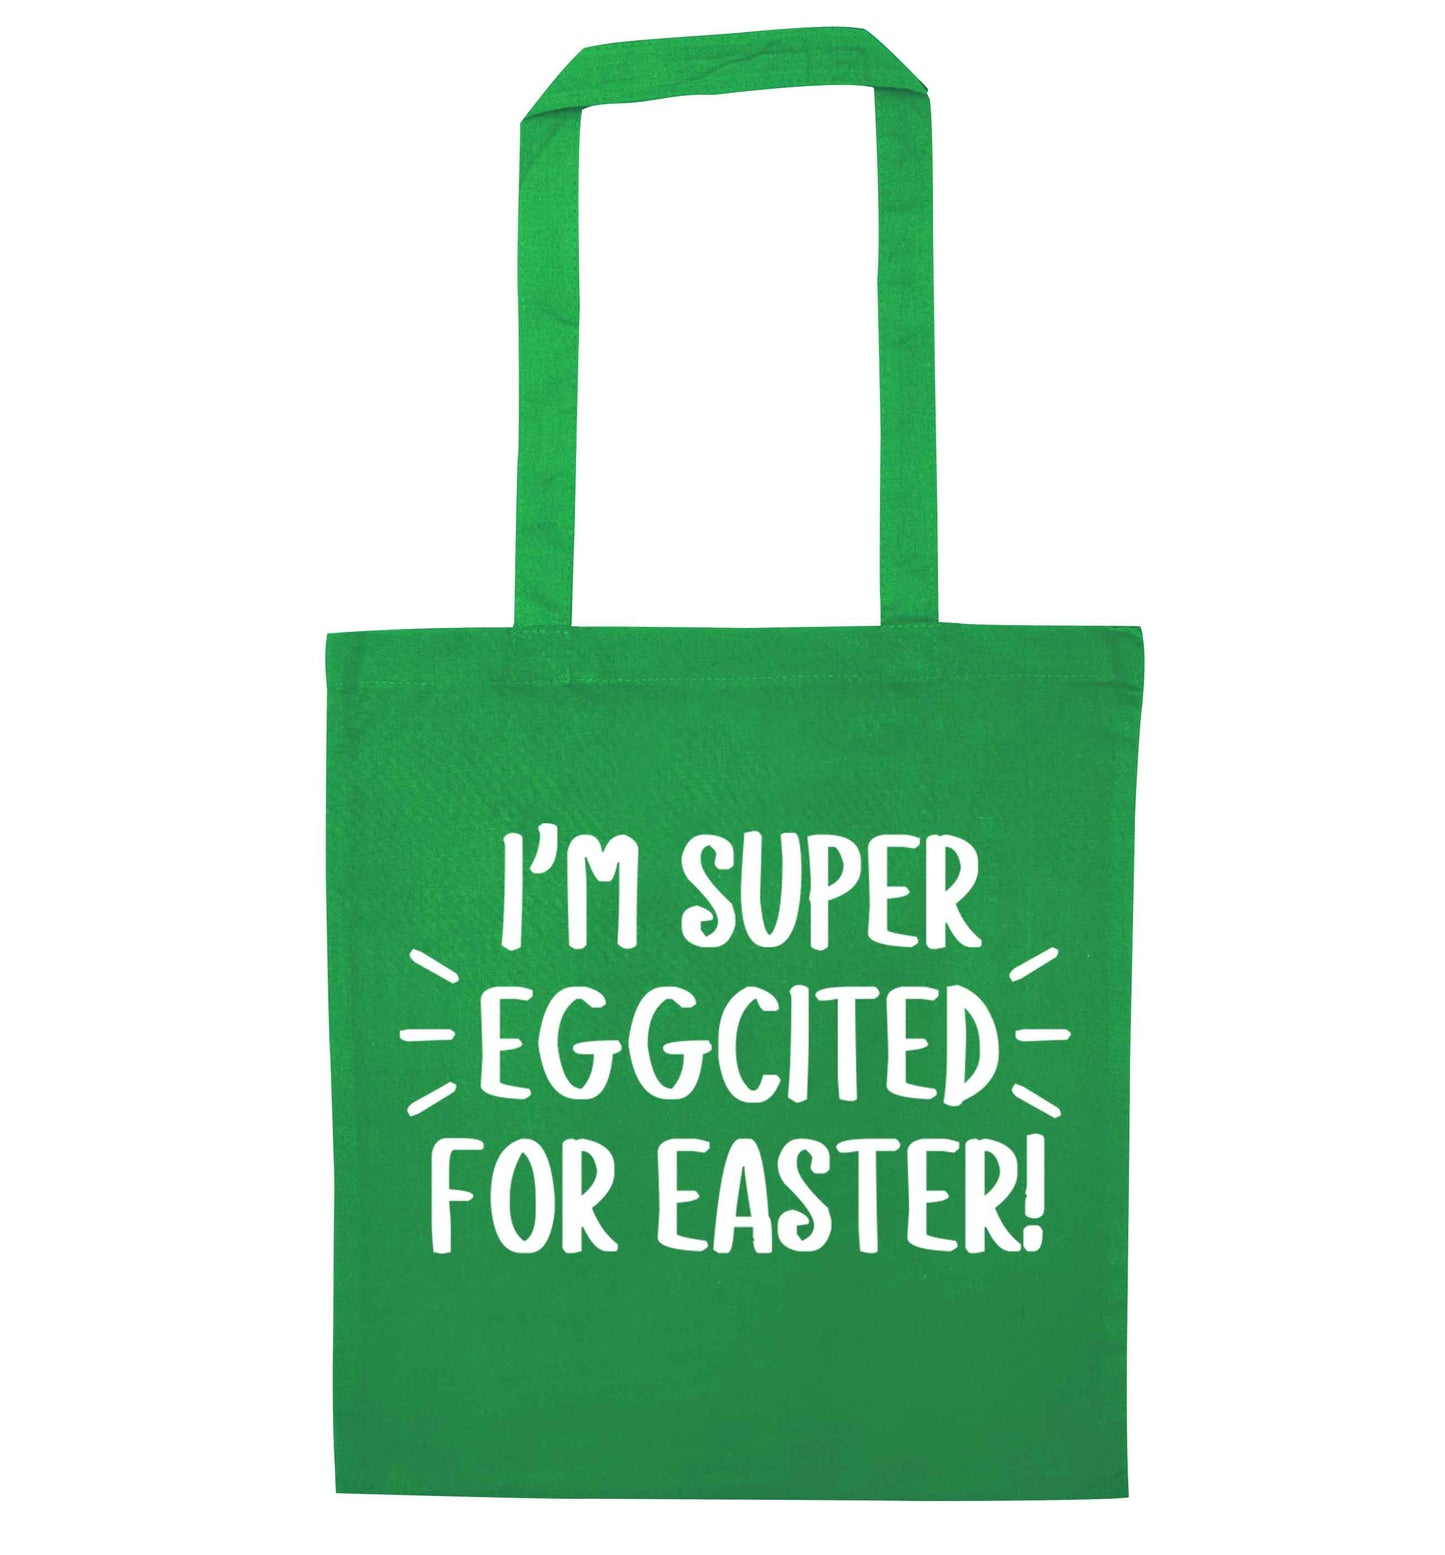 I'm super eggcited for Easter green tote bag